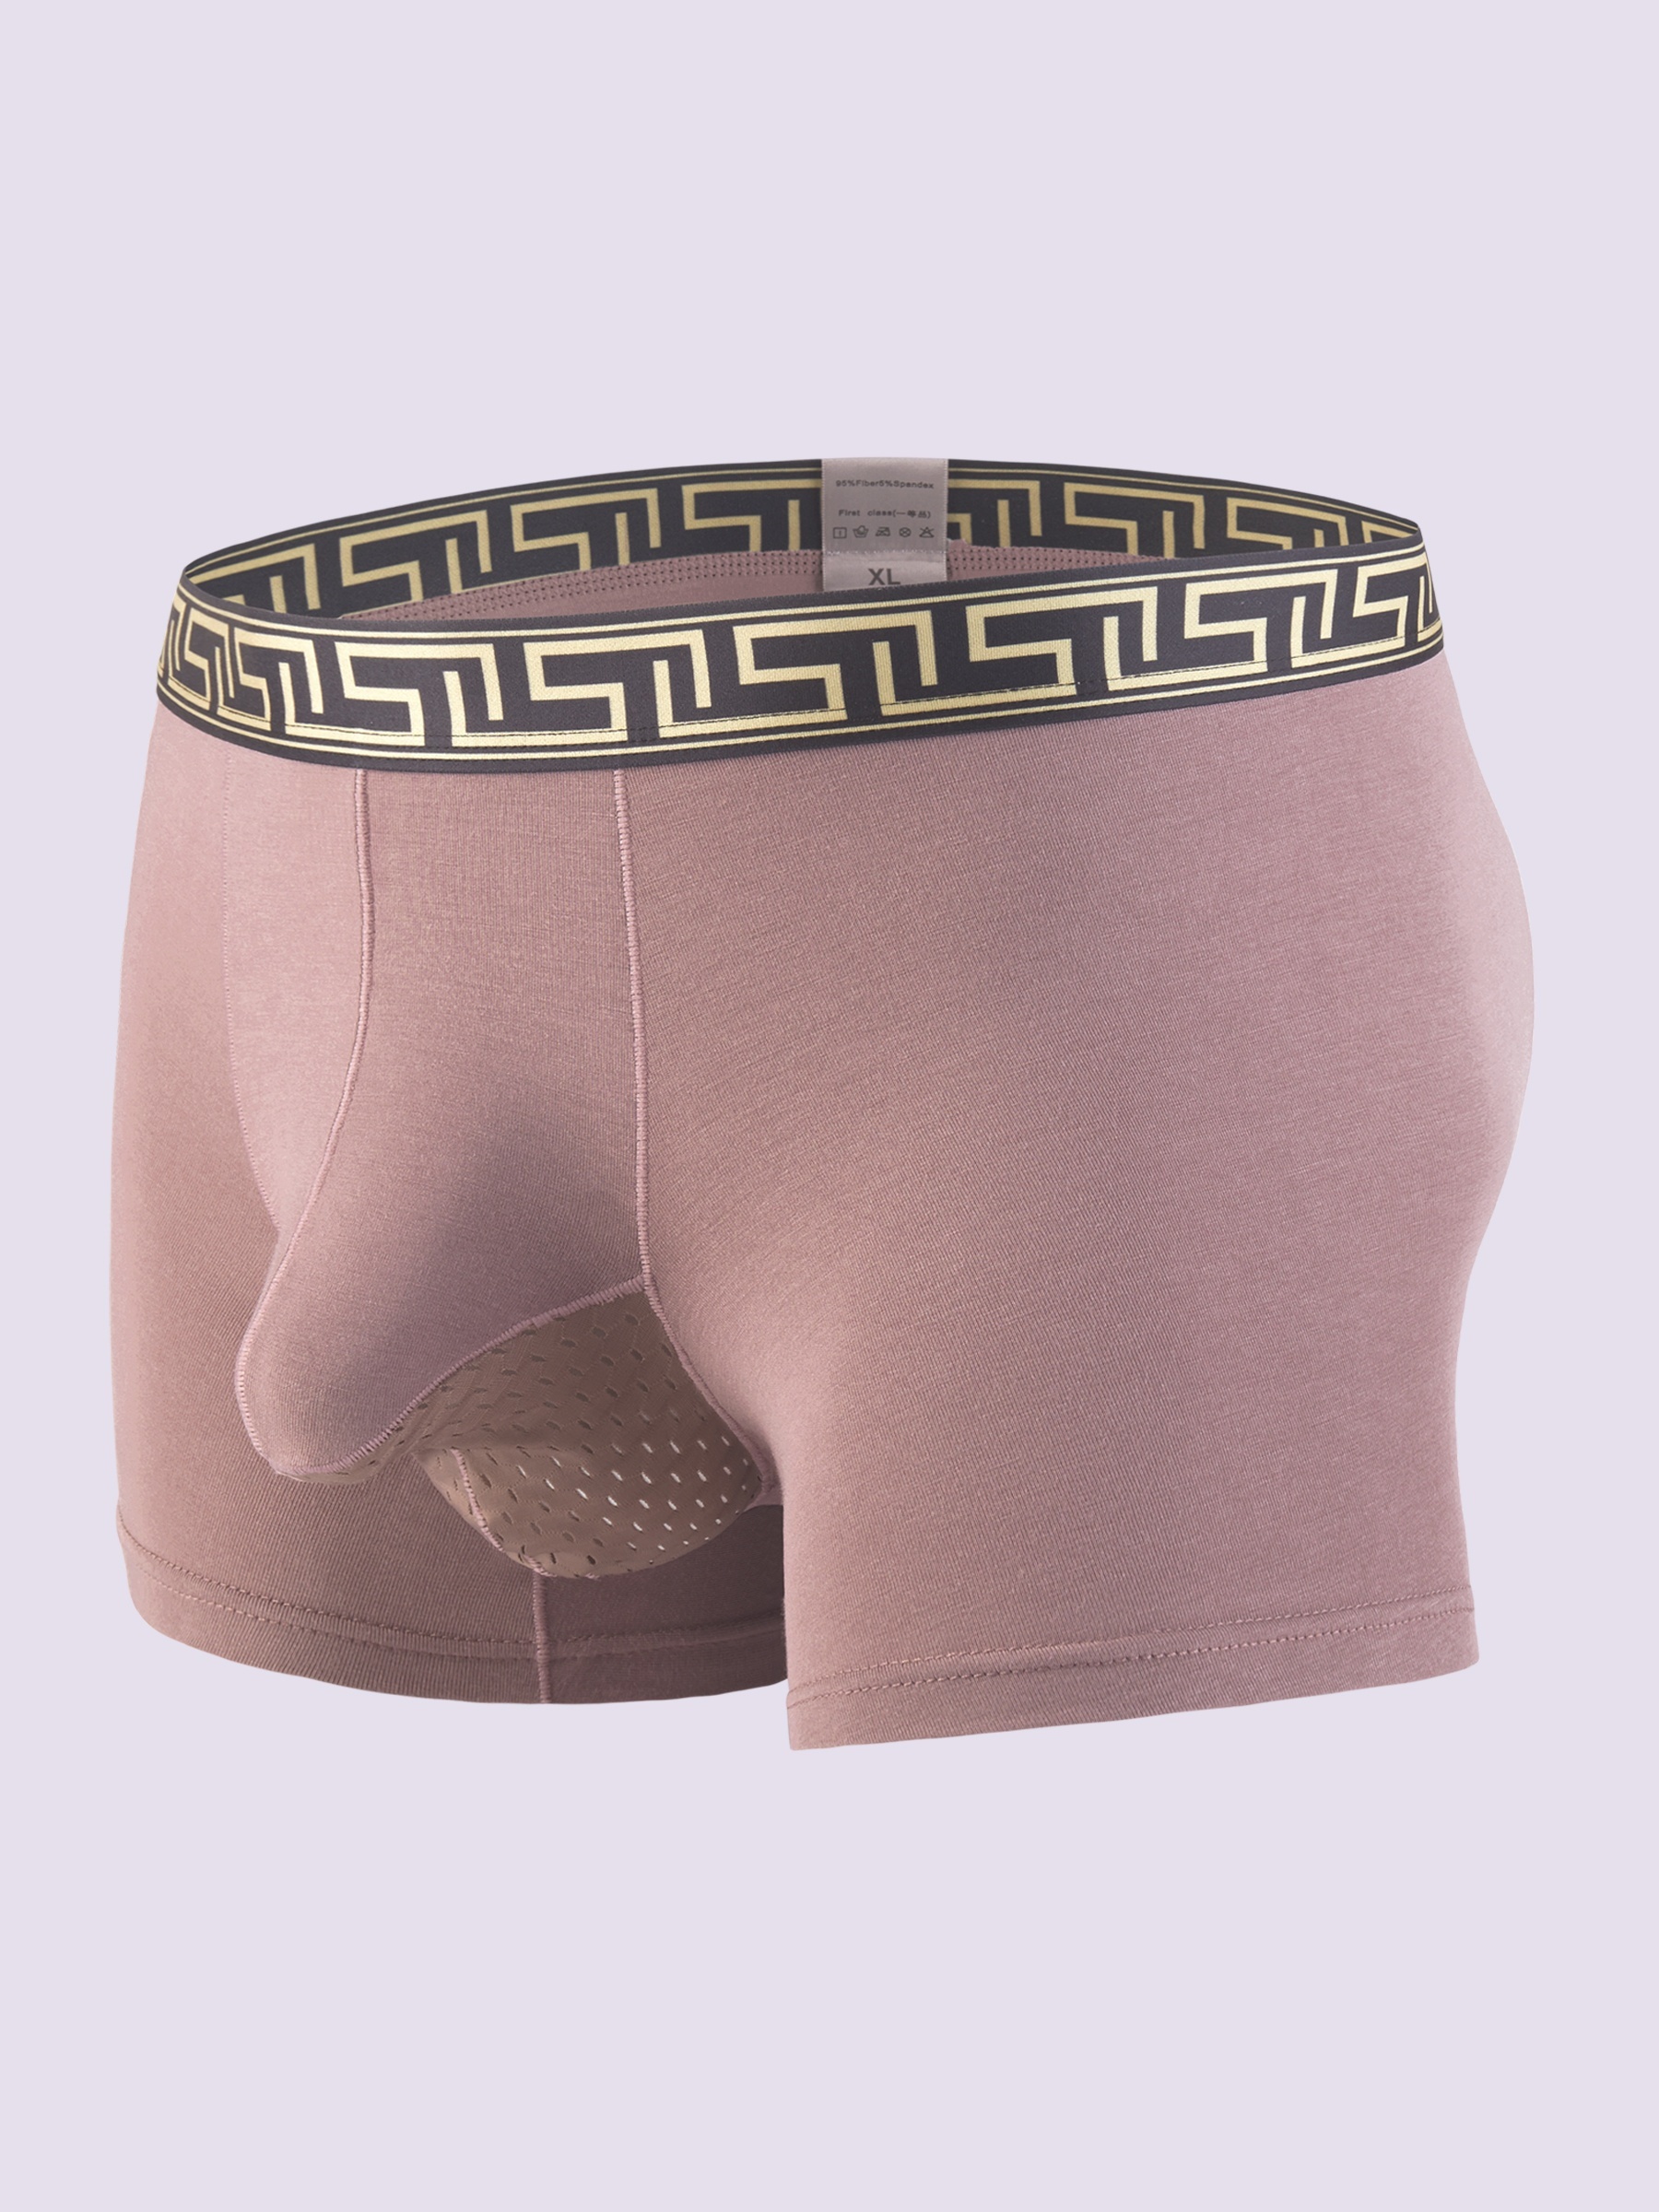 4PCS Men Elephant Nose Pouch Panties Underwear Solid Boxers Briefs Trunks  Shorts